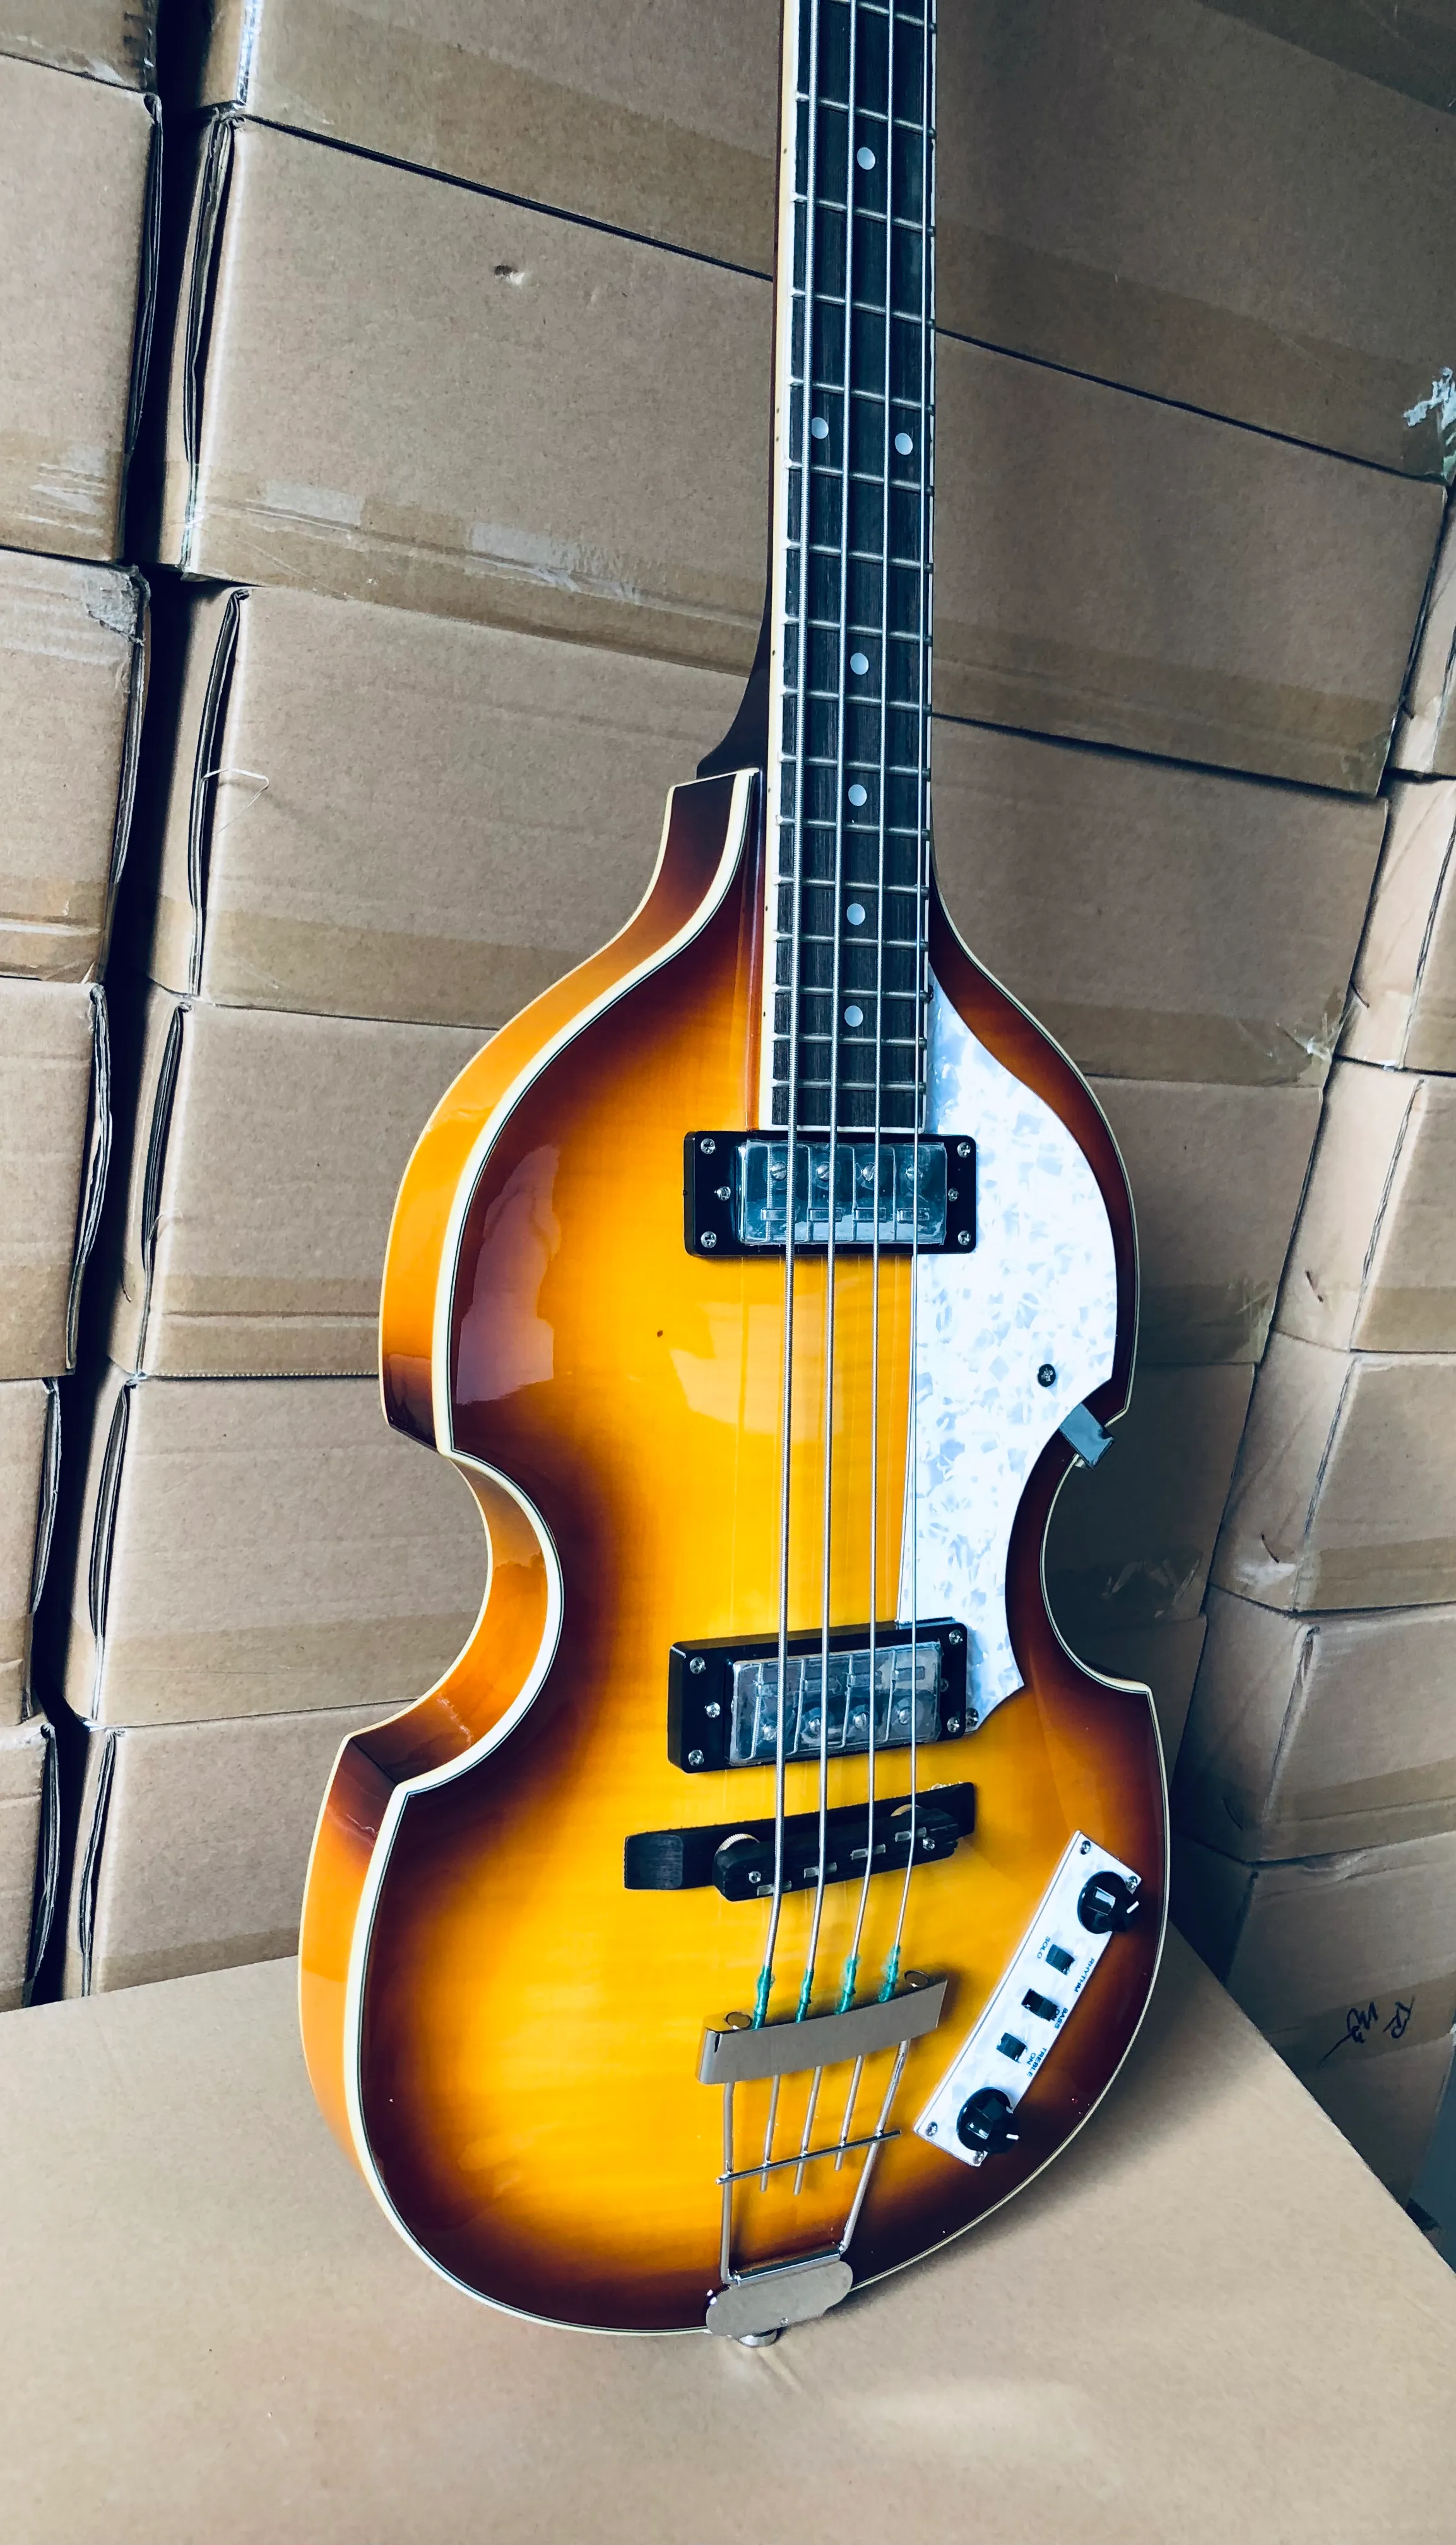 McCartney Hofner Deluxe Sunburst 4 cordes violon basse guitare électrique dos en érable flammé, 2 micros à agrafes 511B, H500/1-CT contemporain, accordeurs blancs, Pearl Pickguard